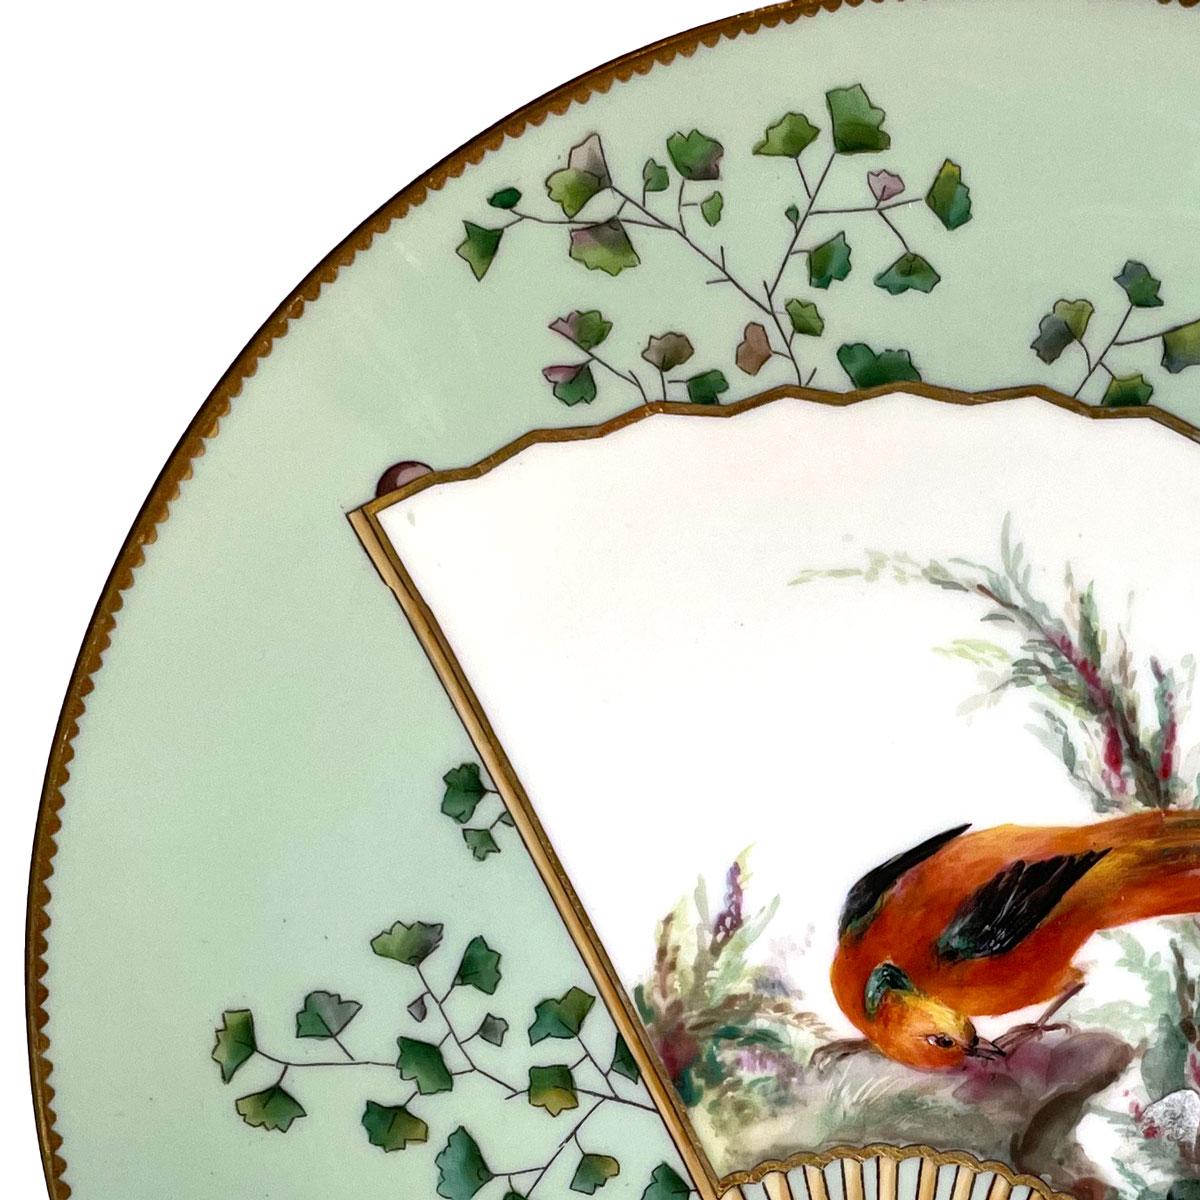 Assiette esthétique en porcelaine de Minton dans le style des créations du Japonisme réalisée par Christopher Dresser. Assiette ronde ornée d'un éventail oriental représentant un bel oiseau coloré. Jolie décoration, avec des plantes et des objets